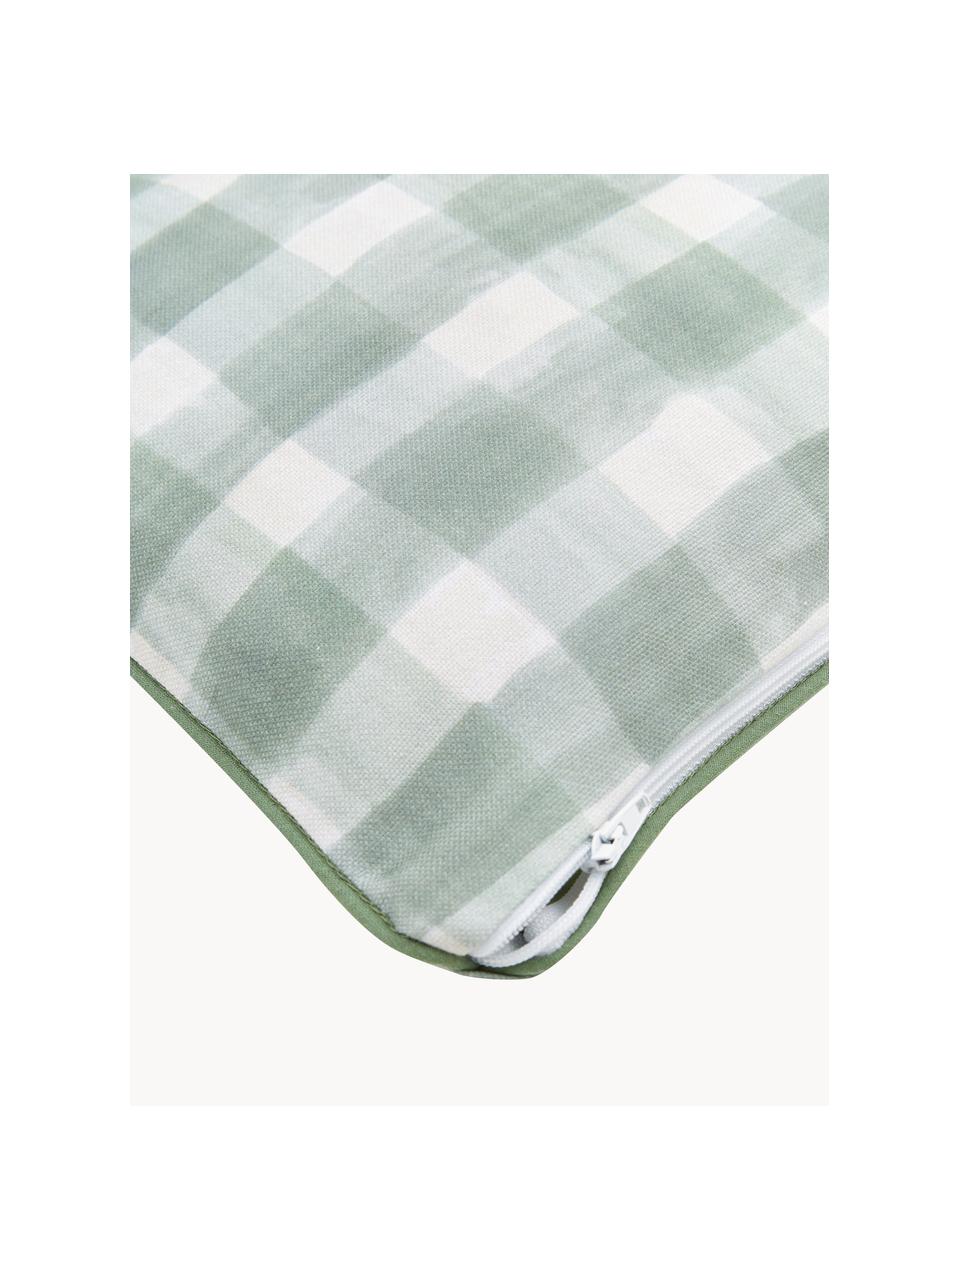 Dwustronna poszewka na poduszkę Check od Candice Gray, 100% bawełna, certyfikat GOTS, Miętowy zielony, biały, S 30 x D 50 cm